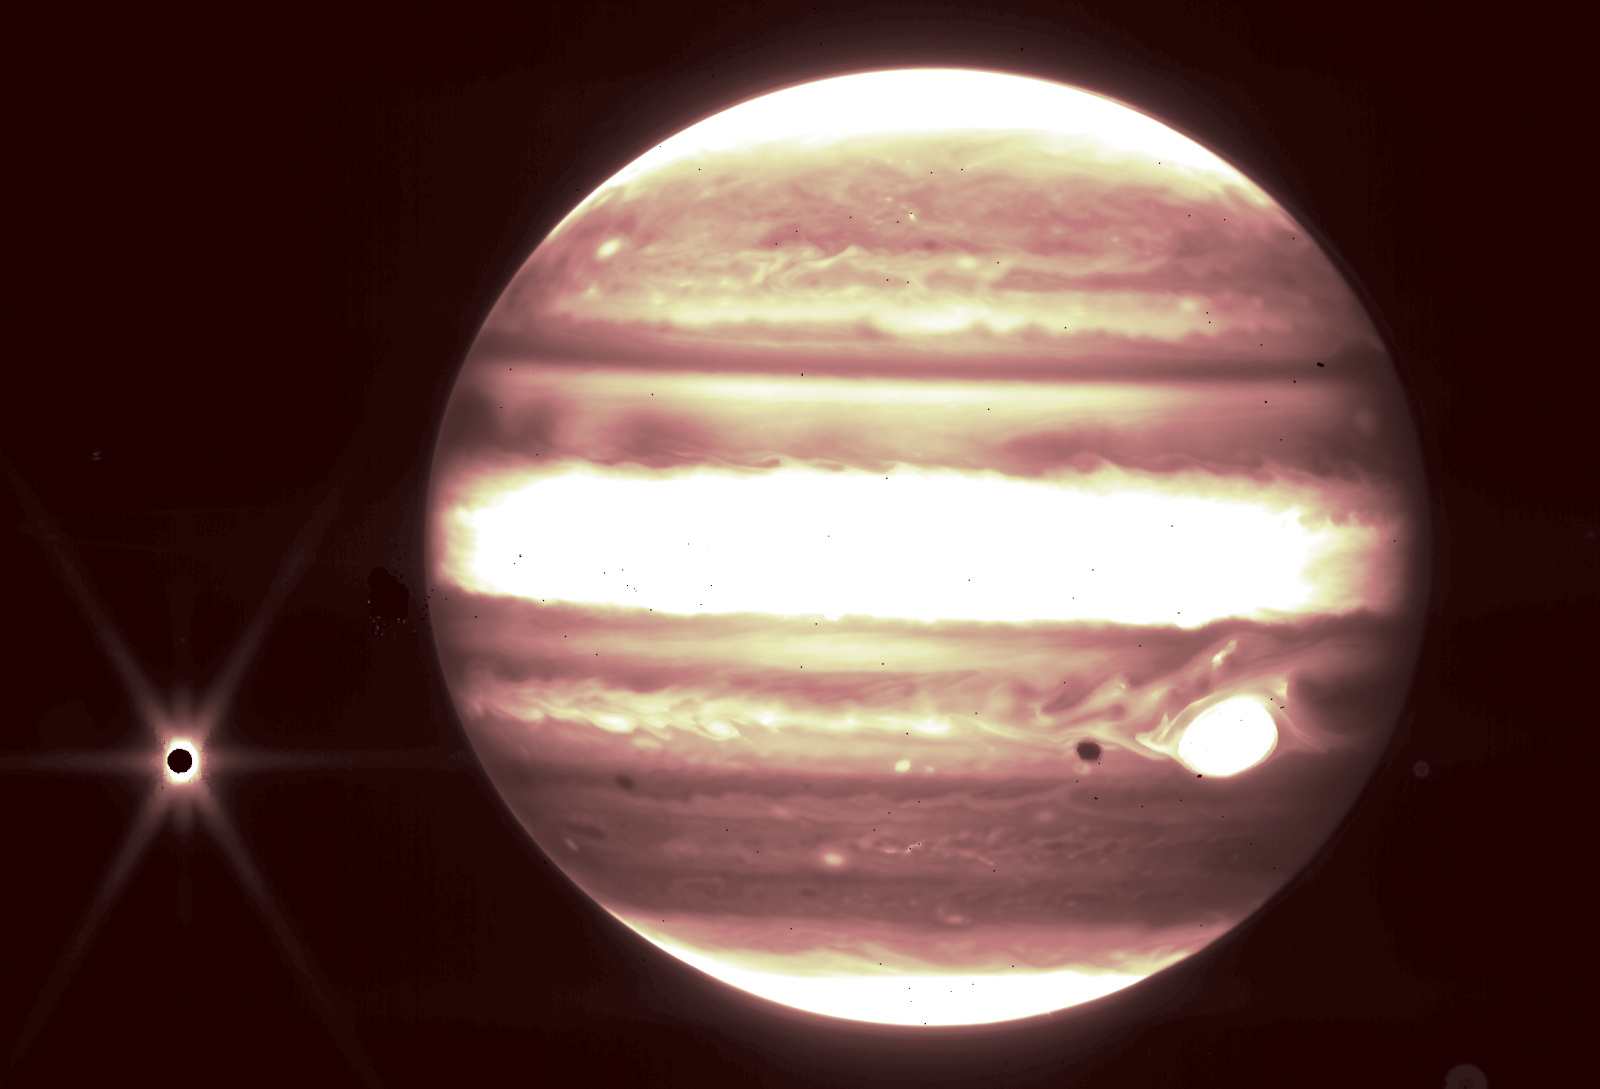 يمكن لتلسكوب جيمس ويب التقاط صور مفصلة لكواكب وأقمار نظامنا الشمسي